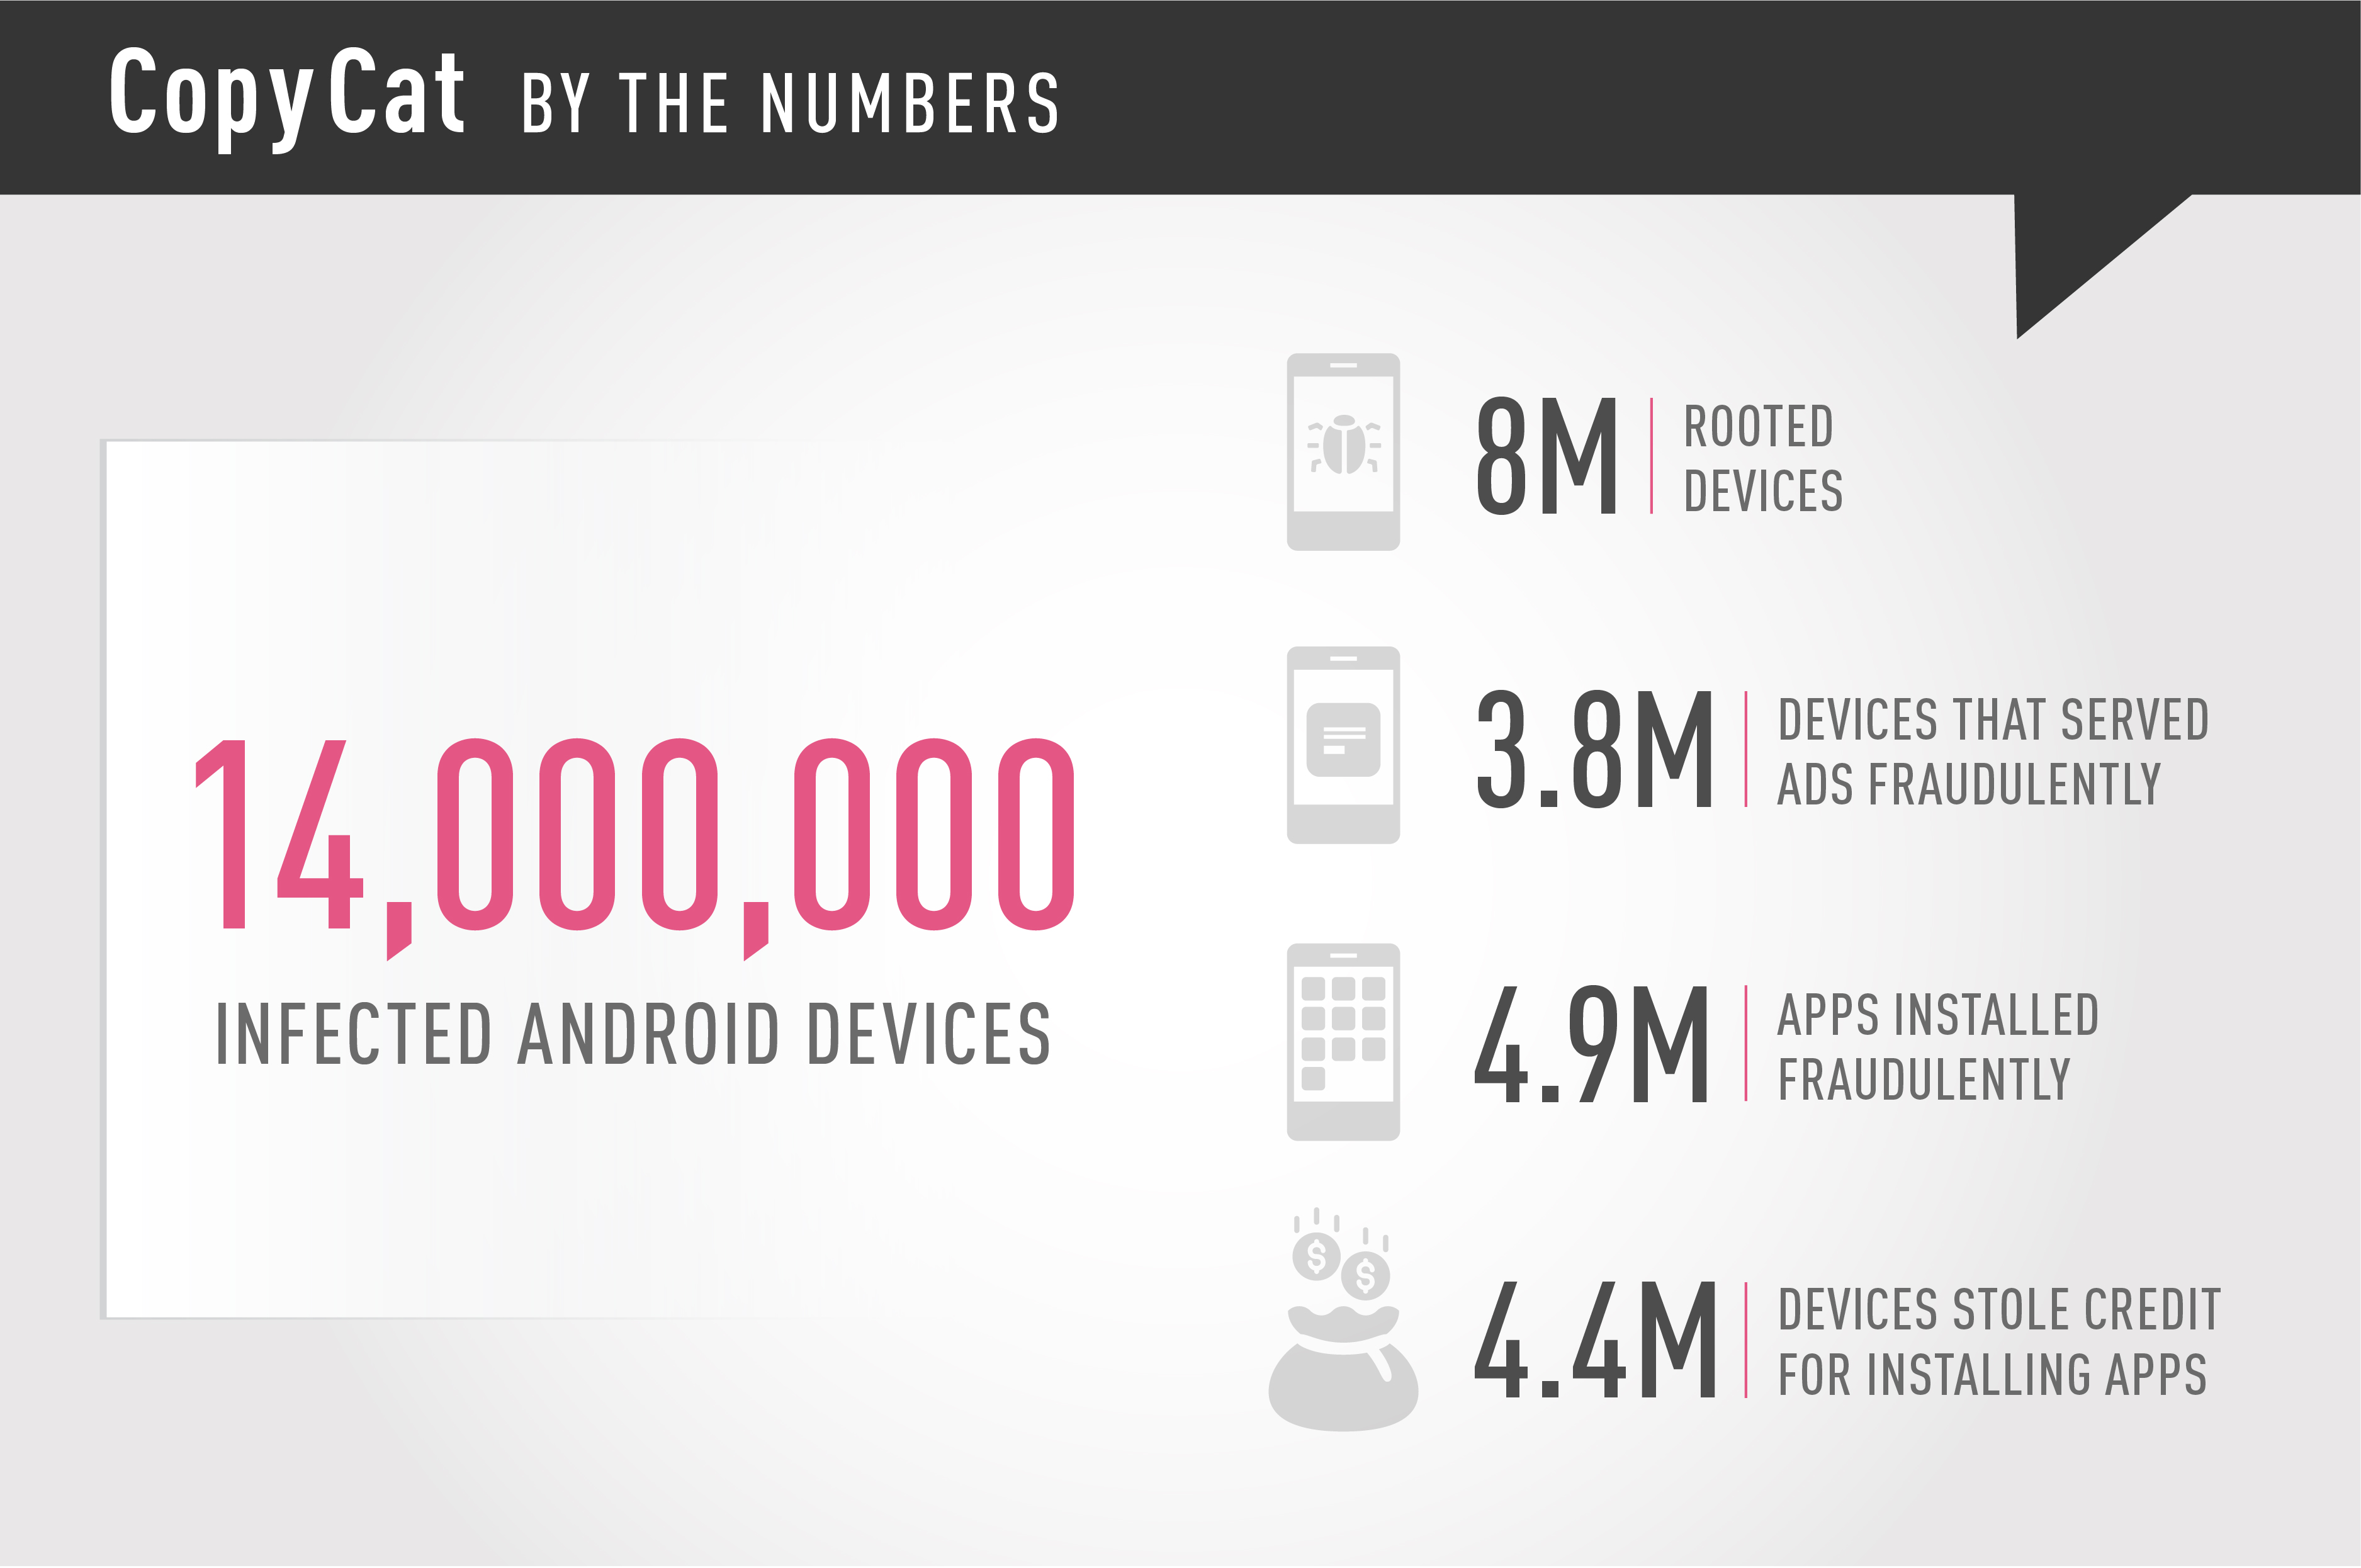 copycat ha infectado 14 millones de moviles